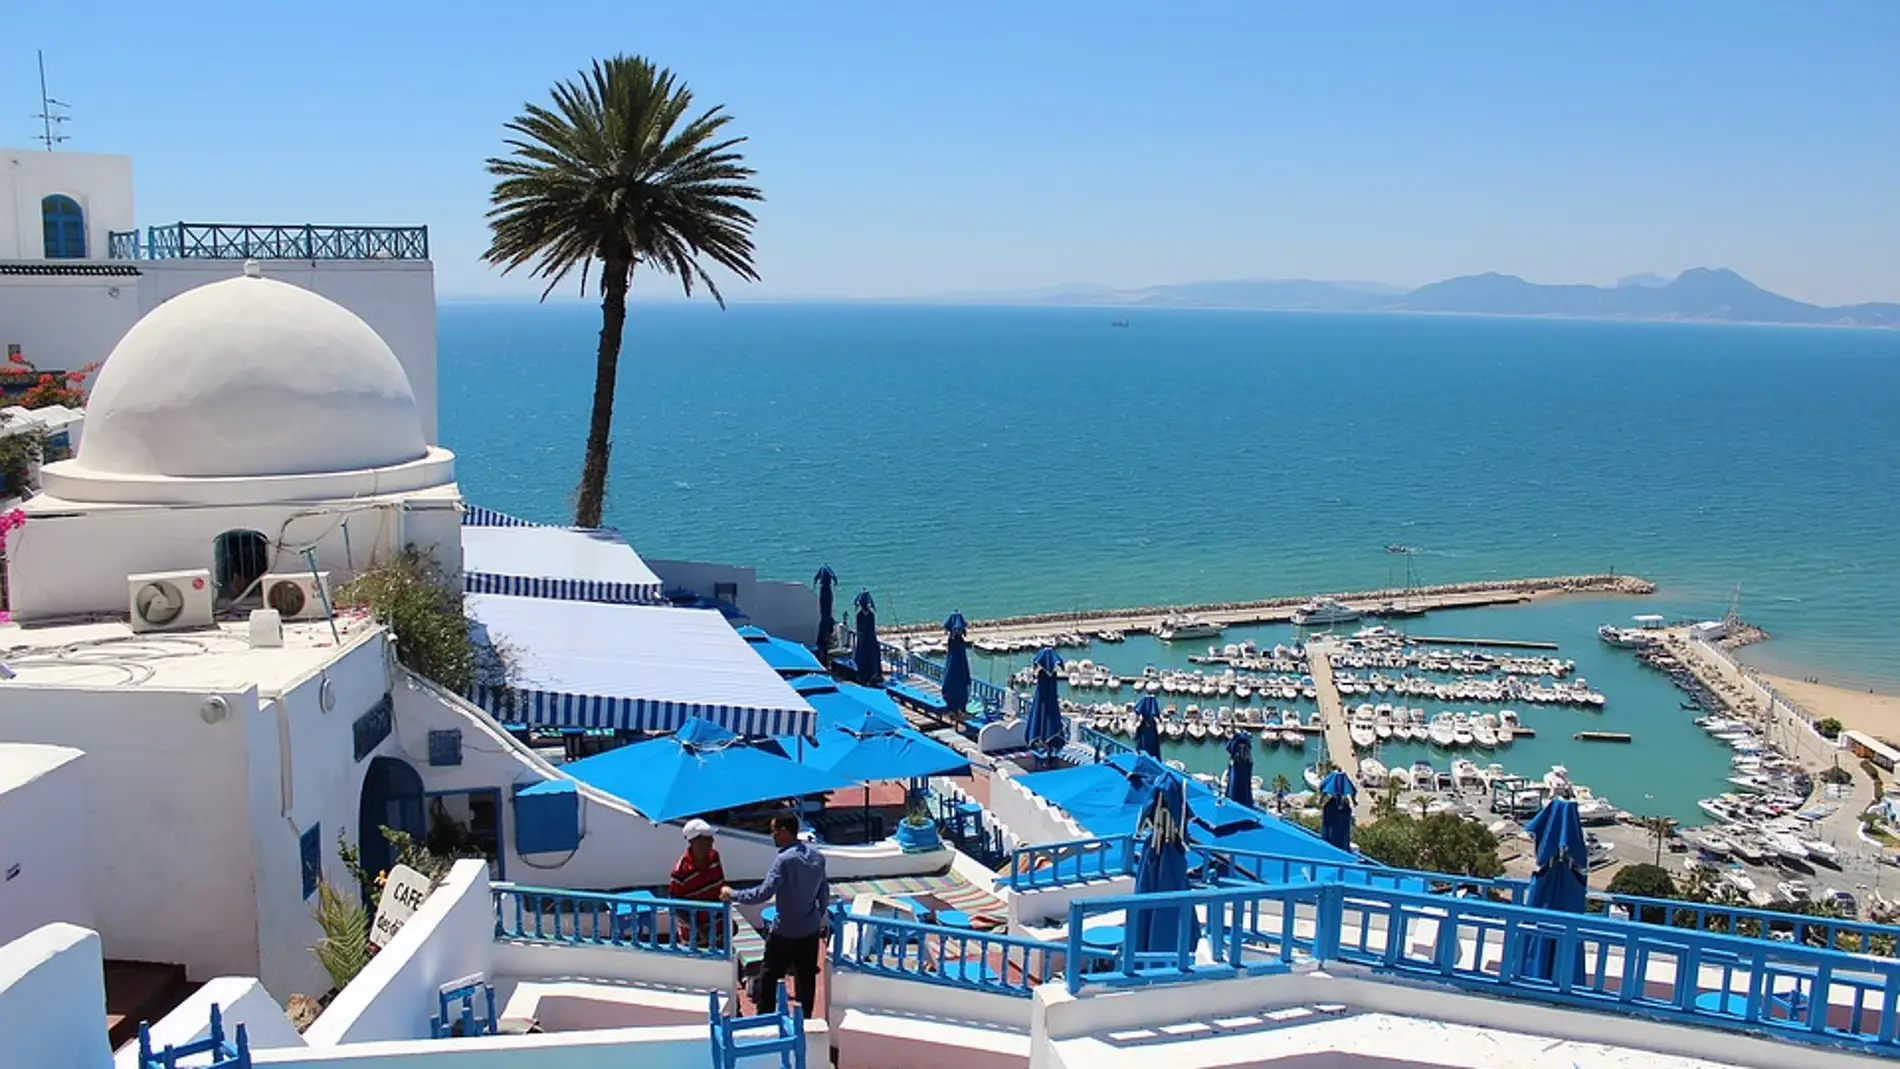 ¡Playas de Túnez! 8 días y 7 noches en Hotel 4* con régimen de Media Pensión. Incluye Vuelos + Traslados + Seguro de viaje.